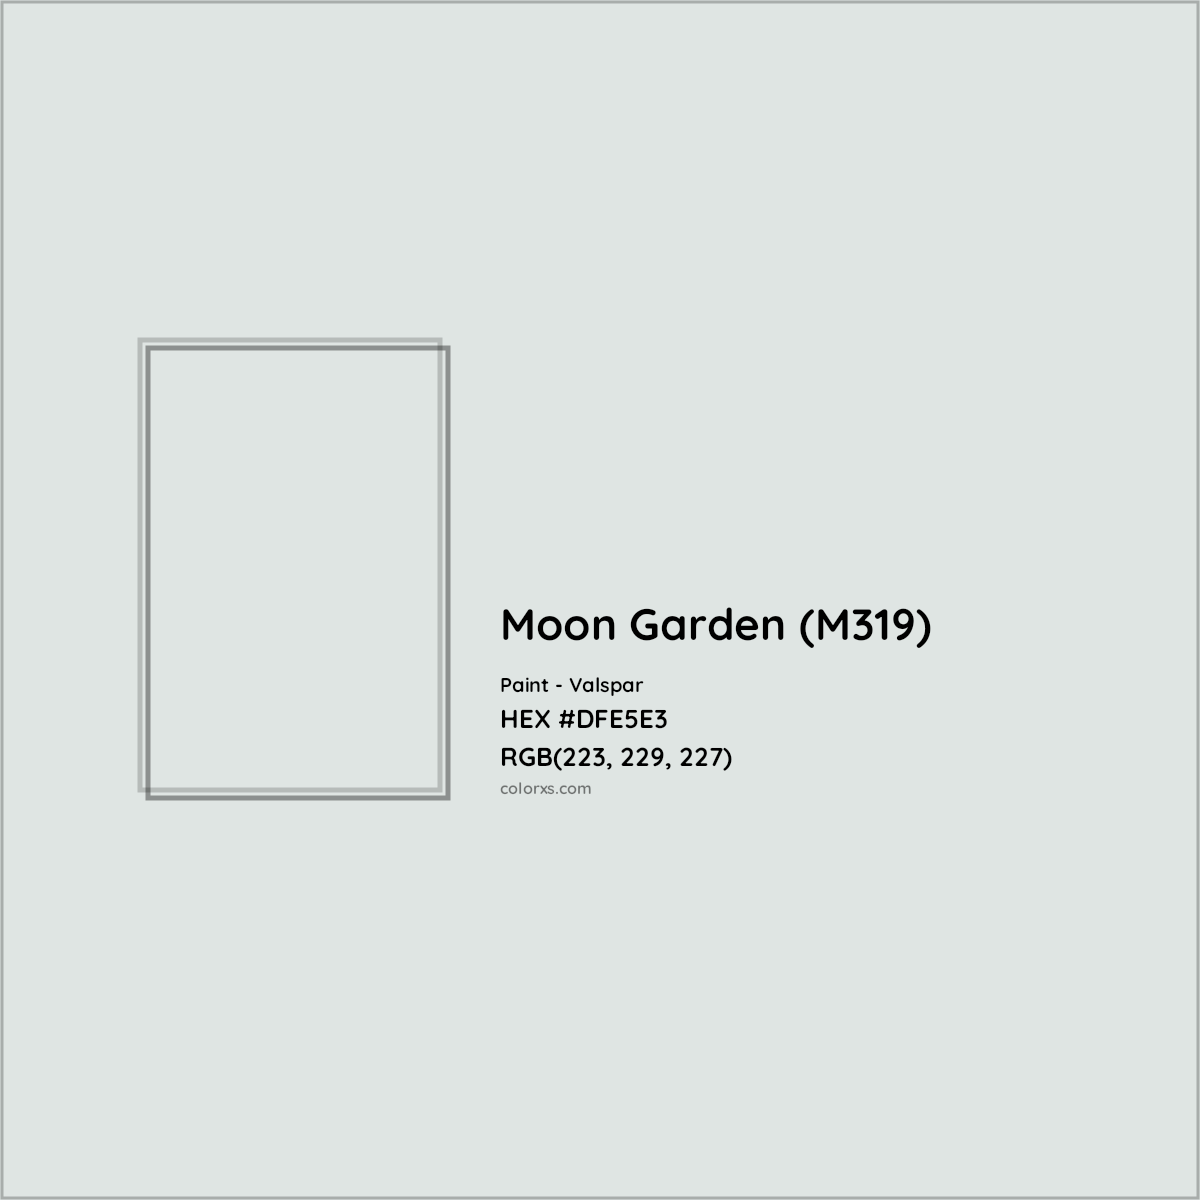 HEX #DFE5E3 Moon Garden (M319) Paint Valspar - Color Code